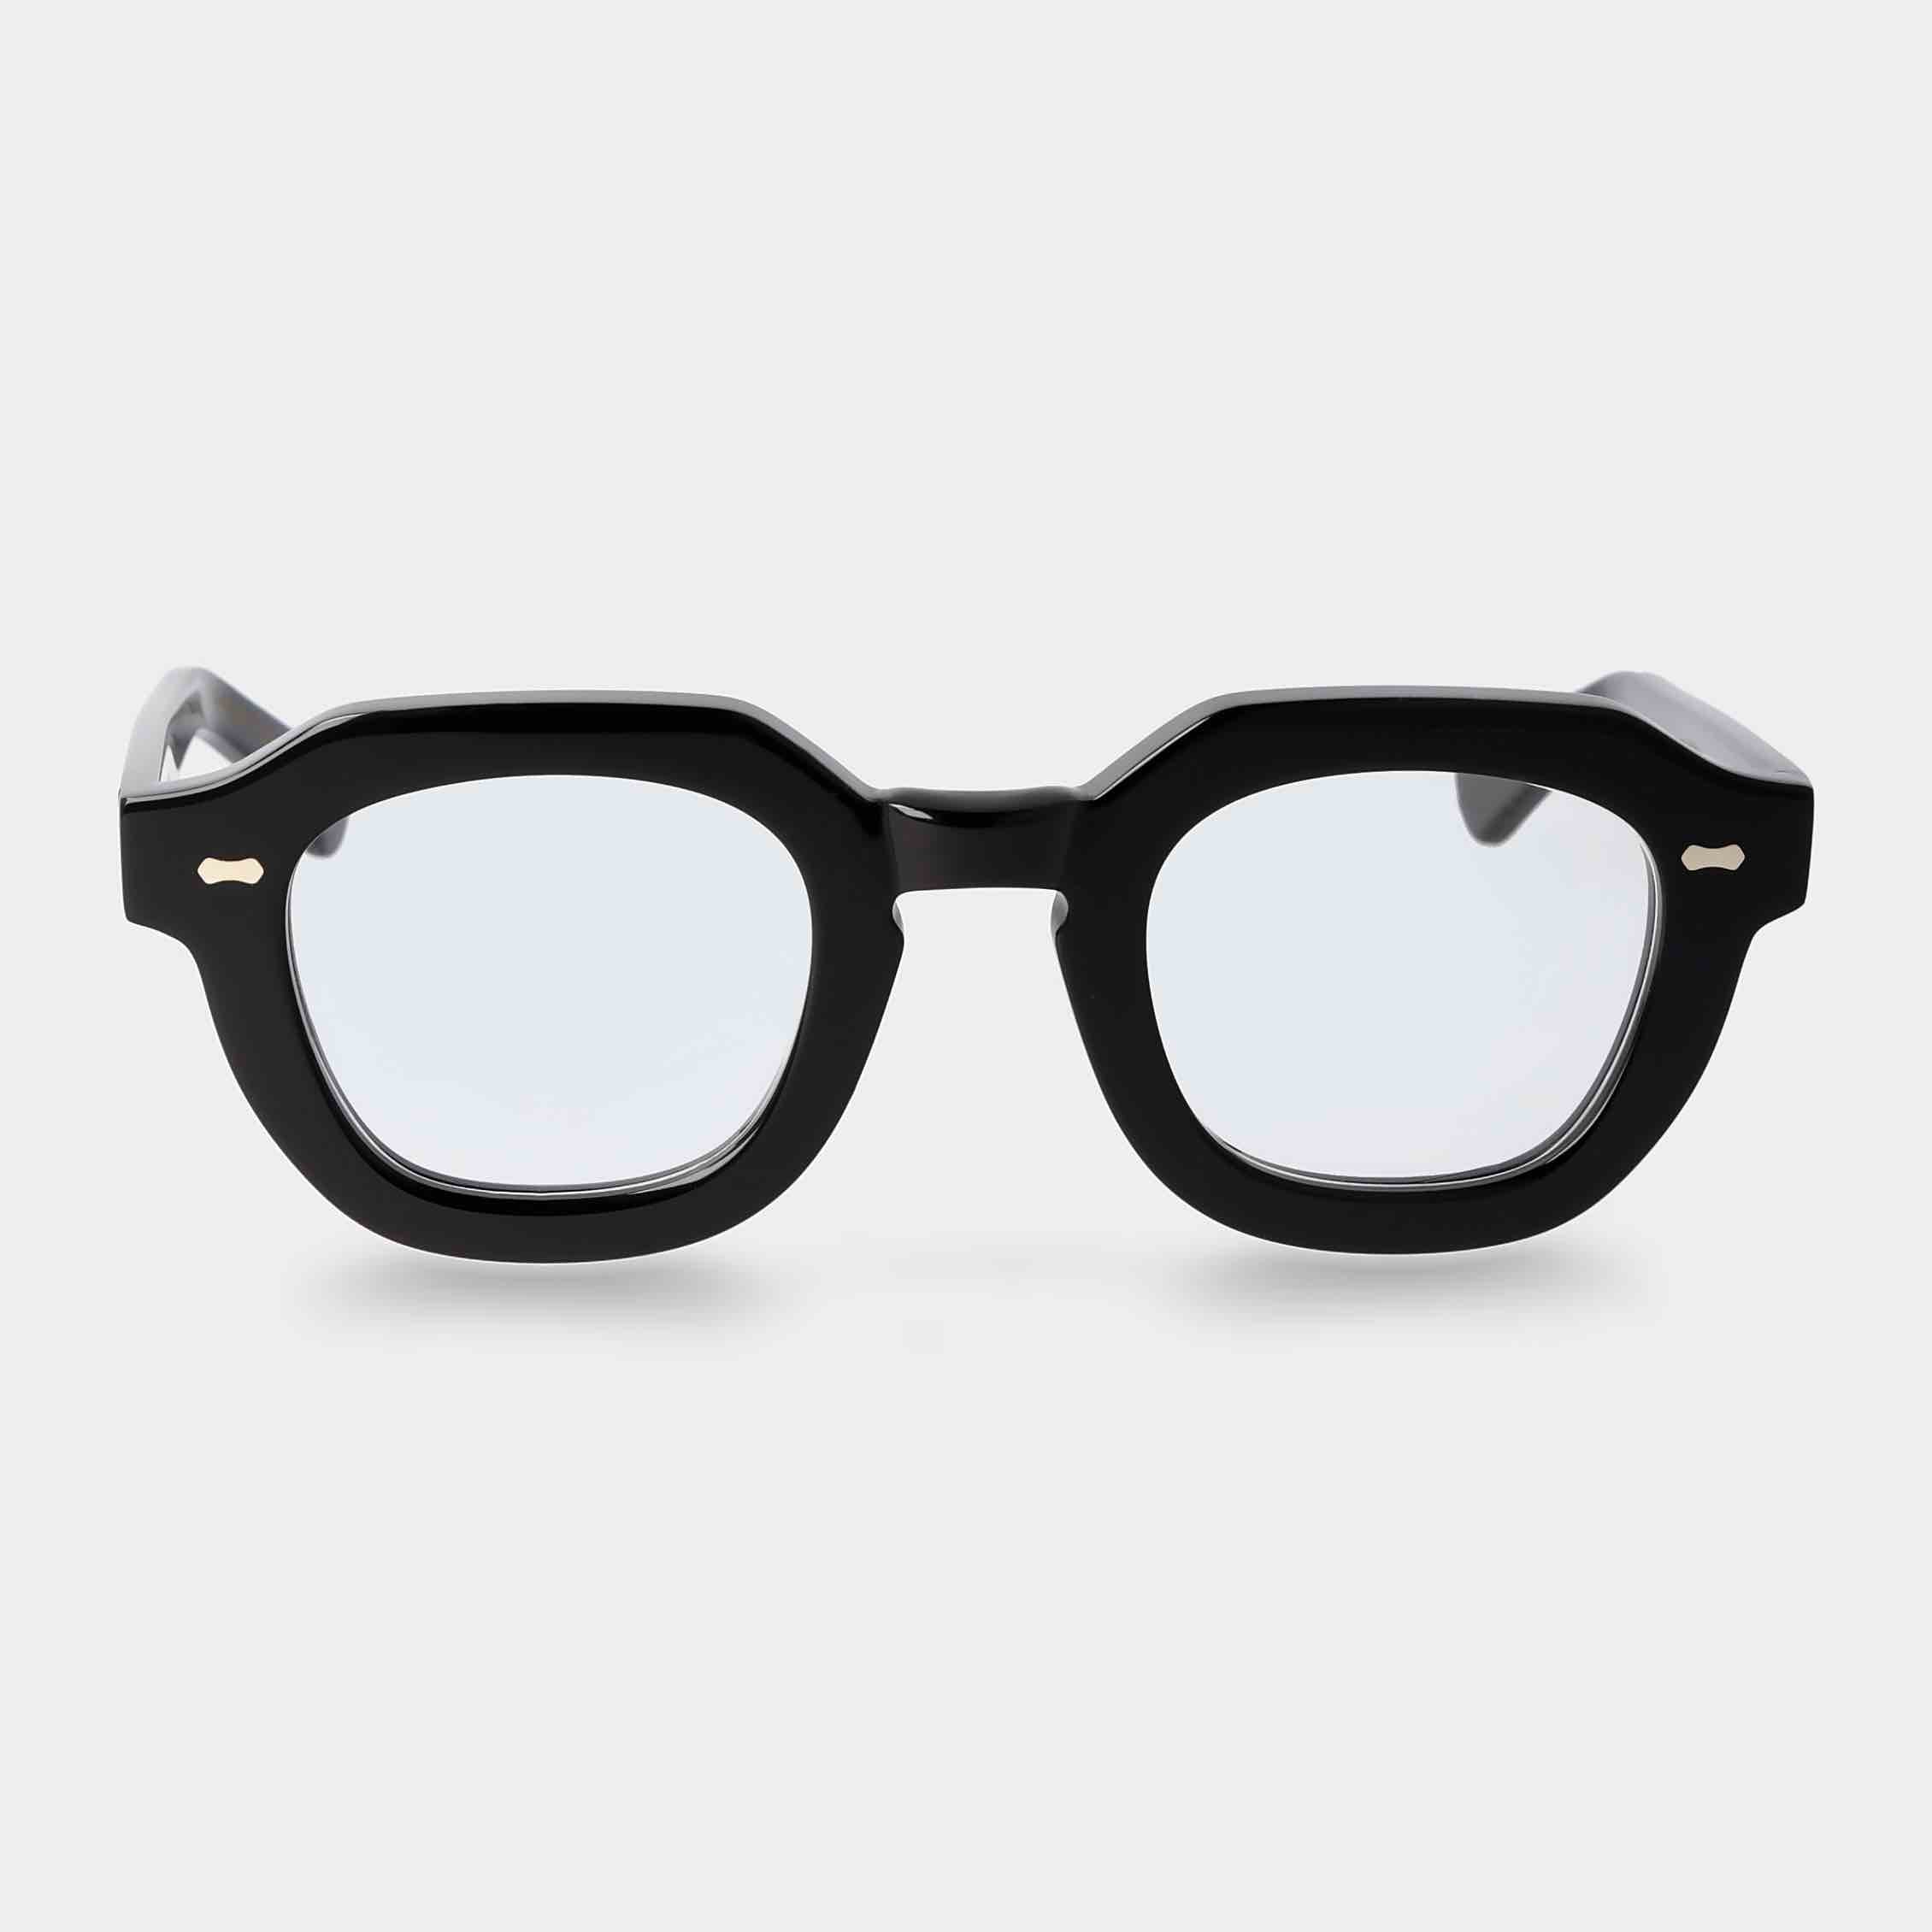 eyeglasses-juta-eco-black-optical-sustainable-tbd-eyewear-front